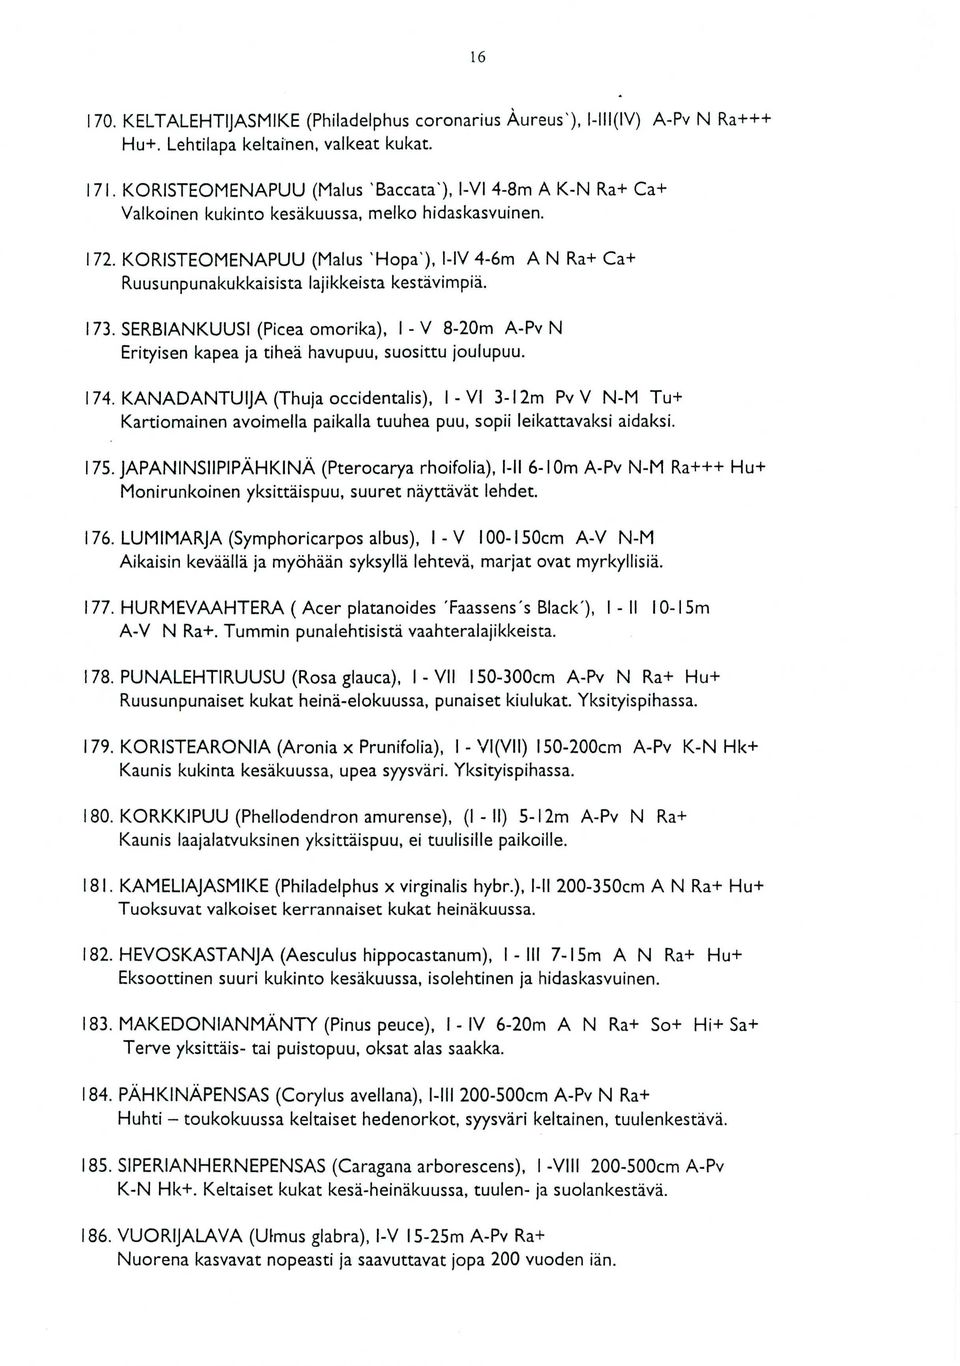 KORISTEOMENAPUU ( Malus ' Hopa'), I-IV 4-6m A N Ra+ Ca+ Ruusunpunakukkaisista lajikkeista kestävimpiä. 173.